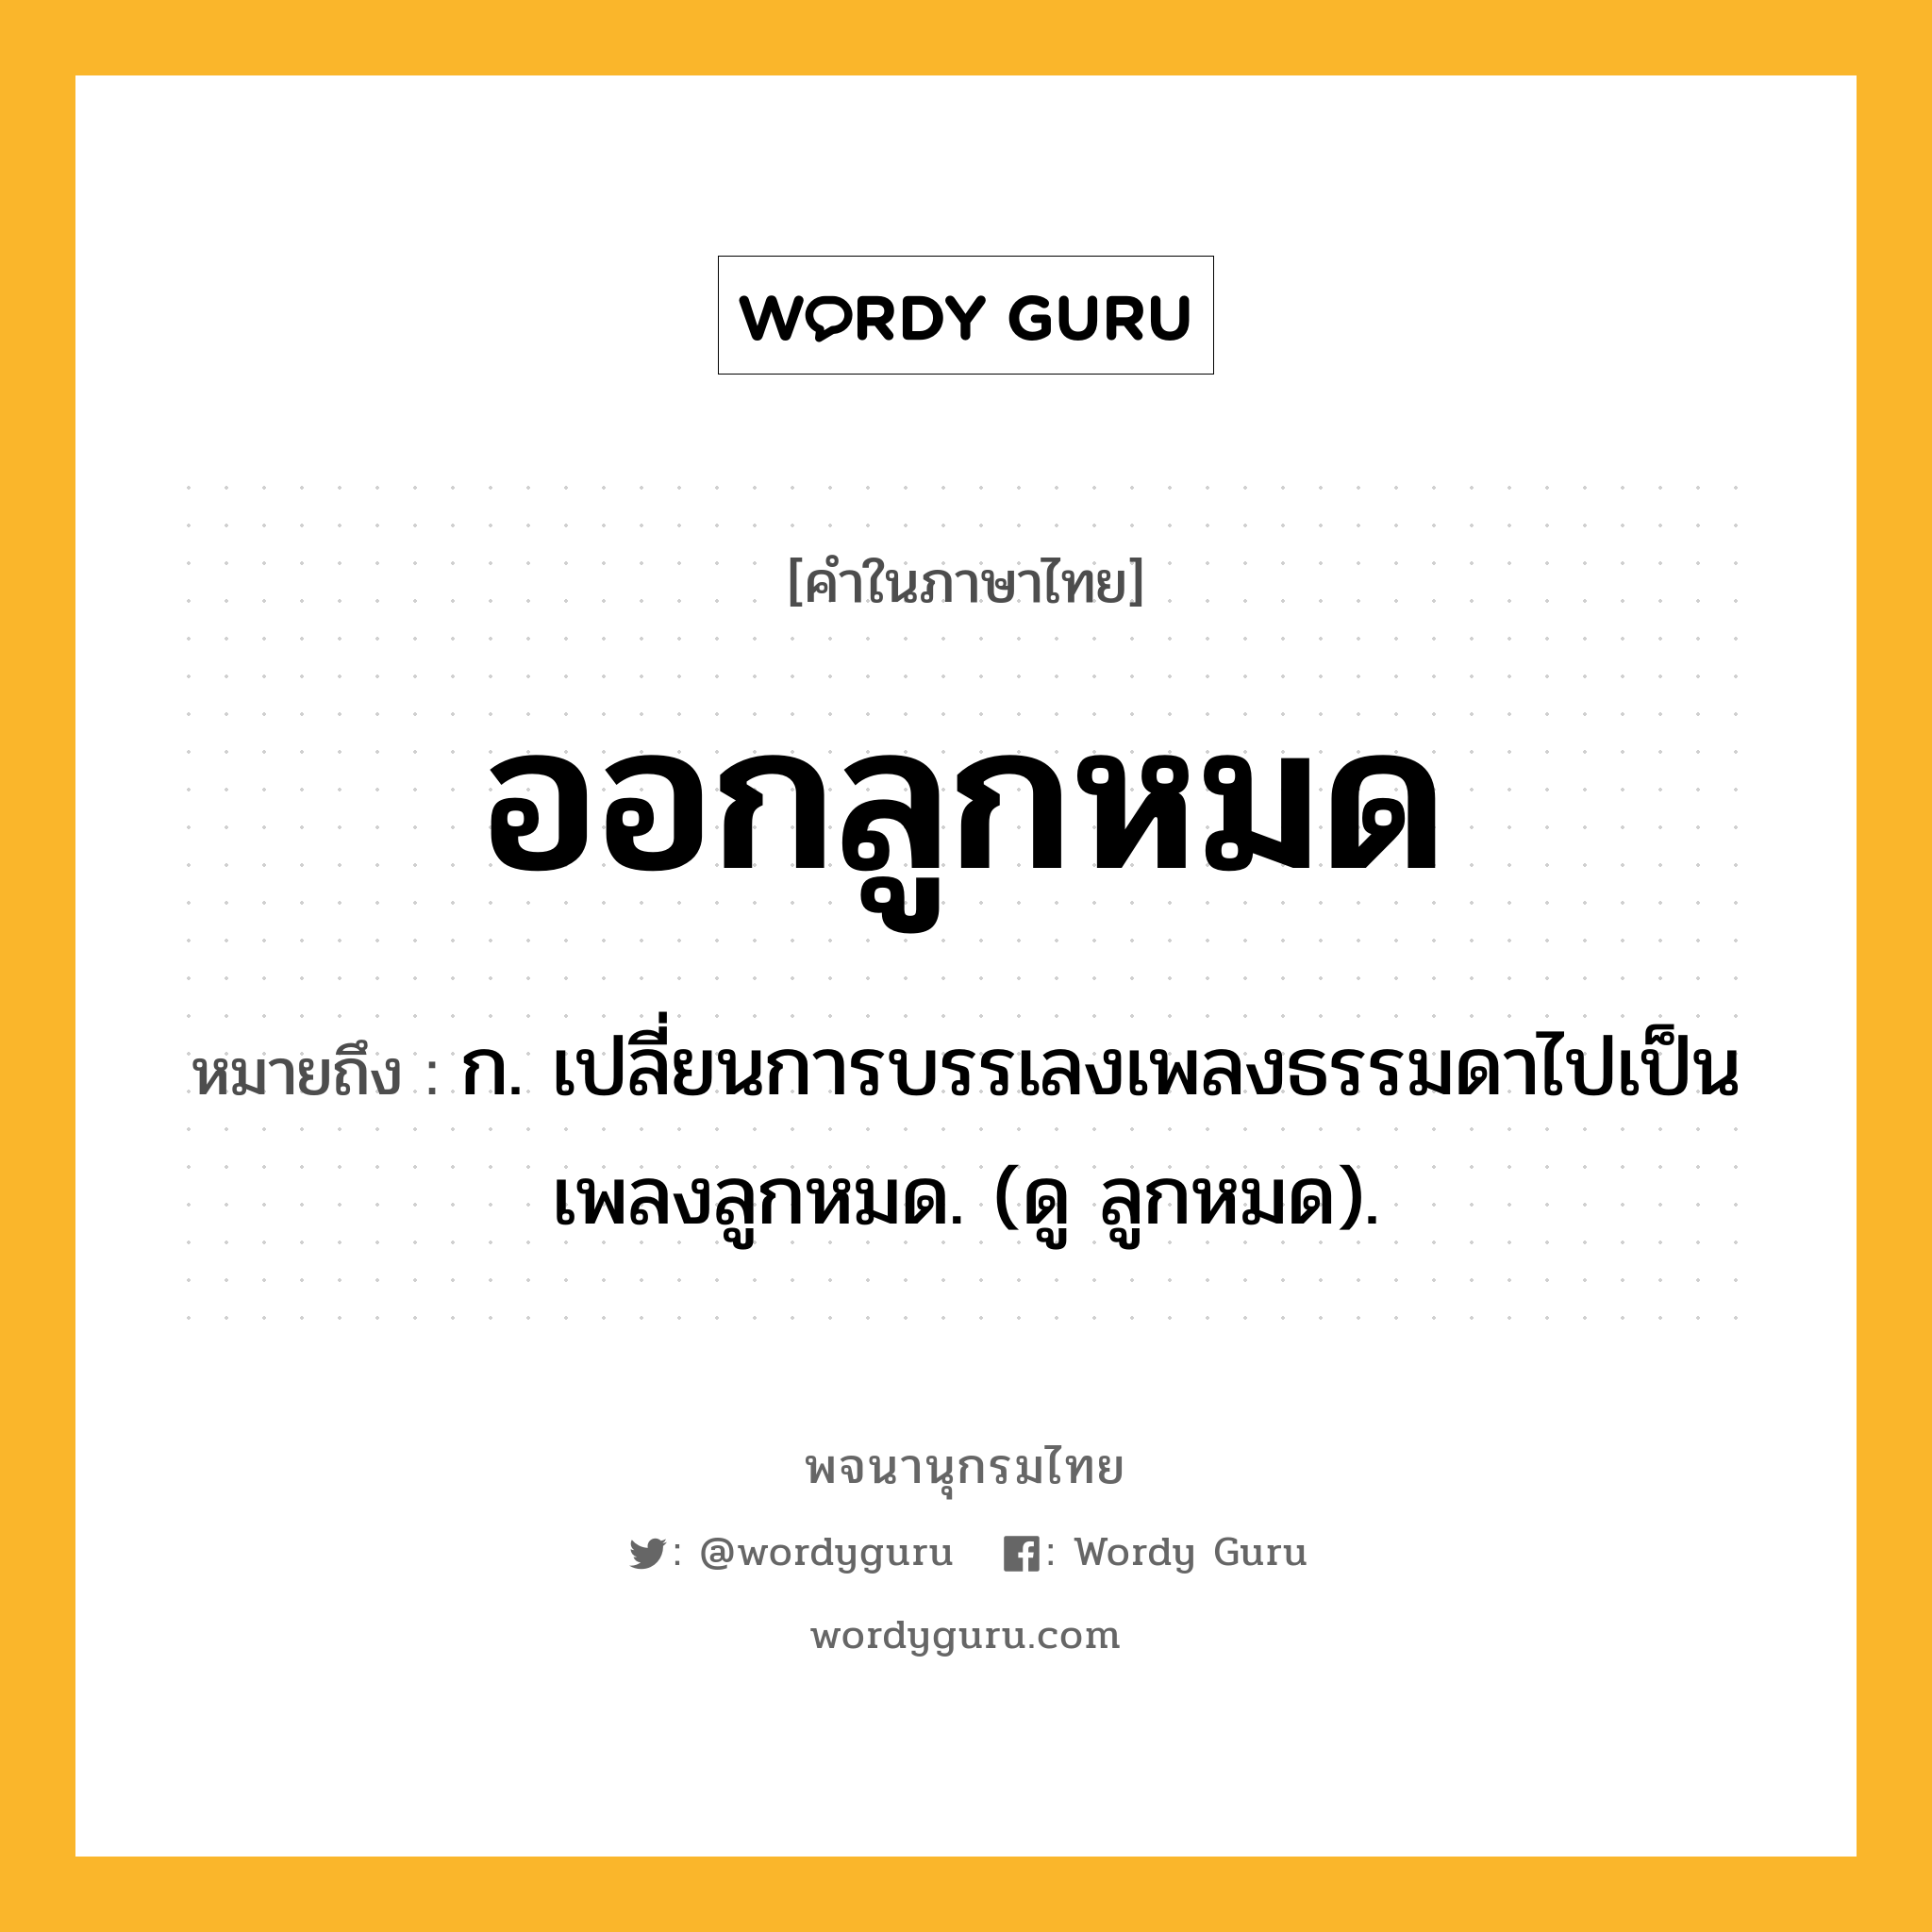 ออกลูกหมด ความหมาย หมายถึงอะไร?, คำในภาษาไทย ออกลูกหมด หมายถึง ก. เปลี่ยนการบรรเลงเพลงธรรมดาไปเป็นเพลงลูกหมด. (ดู ลูกหมด).